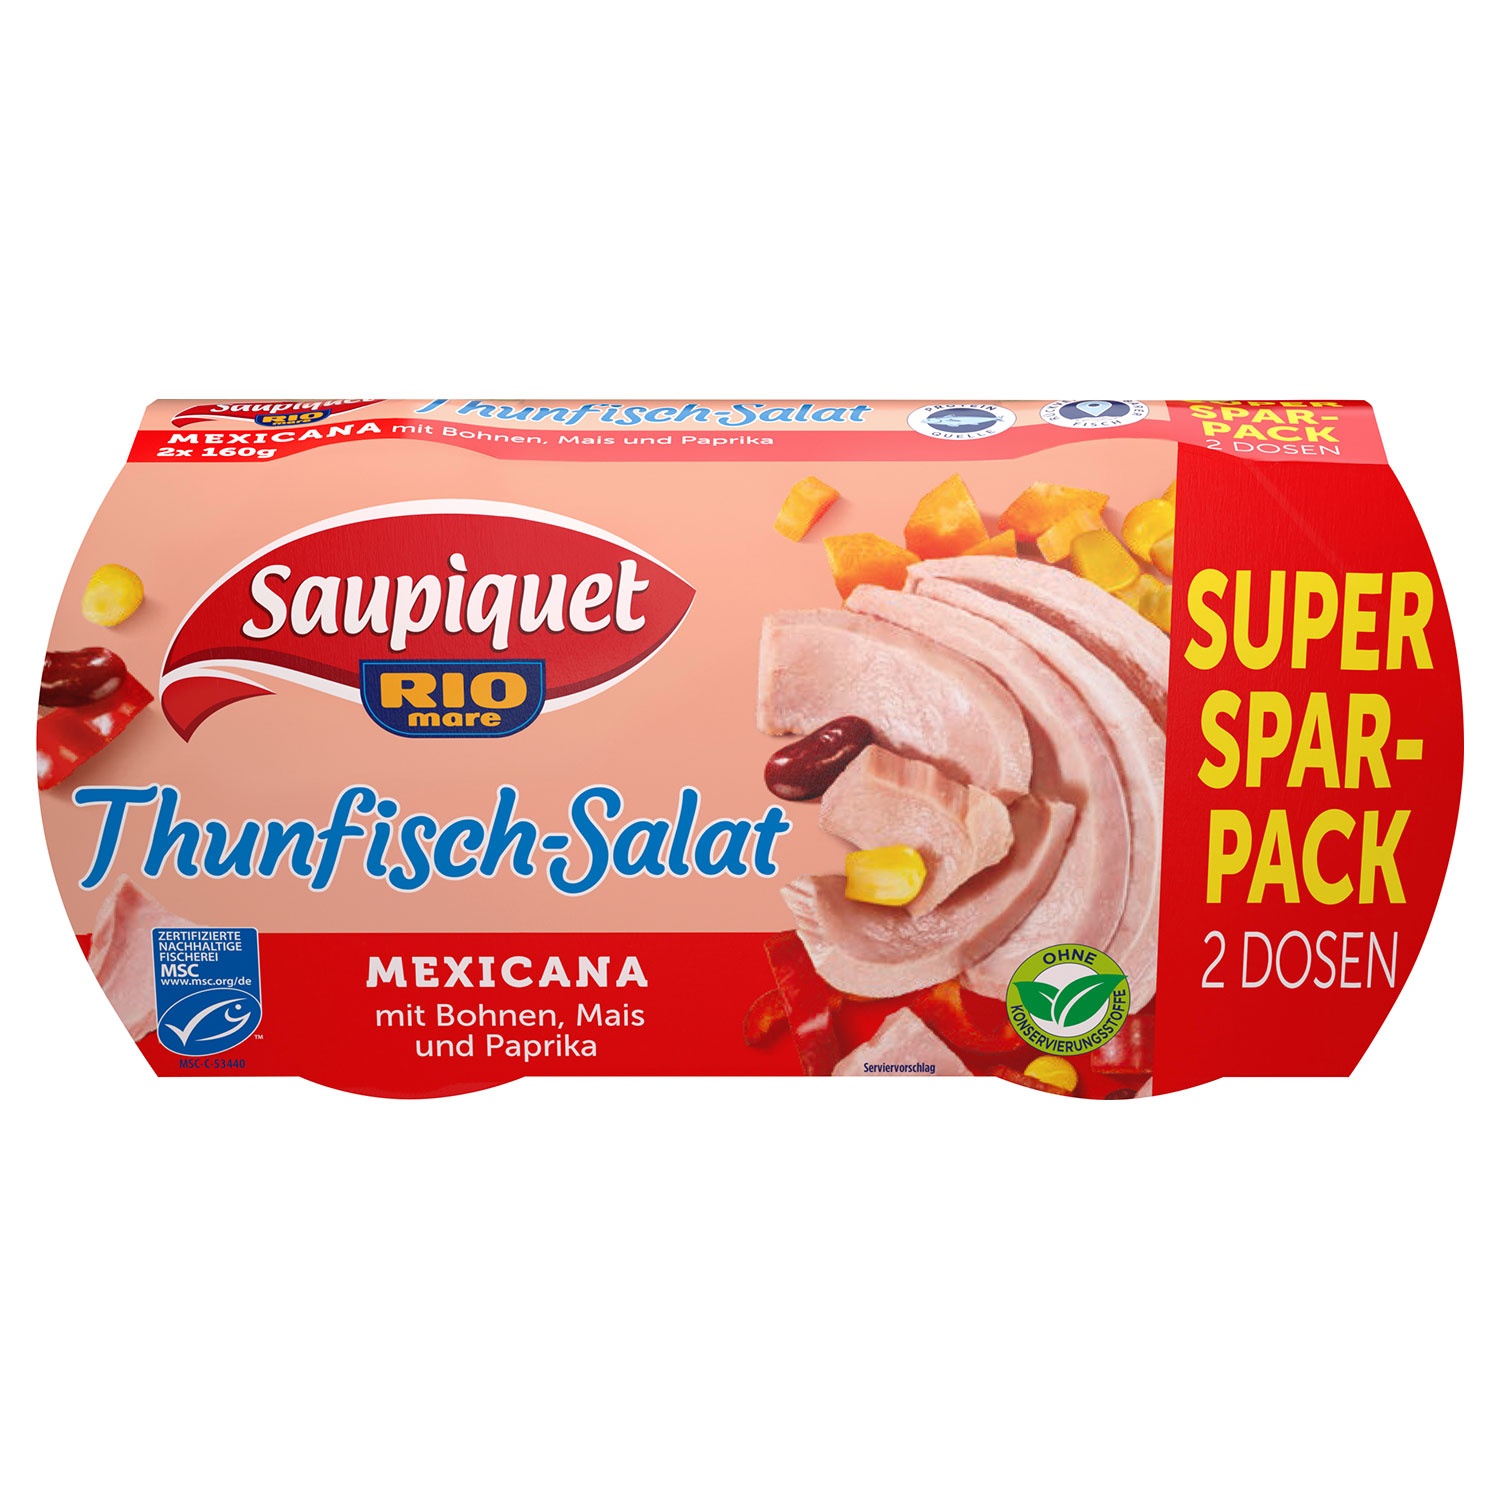 SAUPIQUET RIO MARE Thunfisch-Salat 320 g